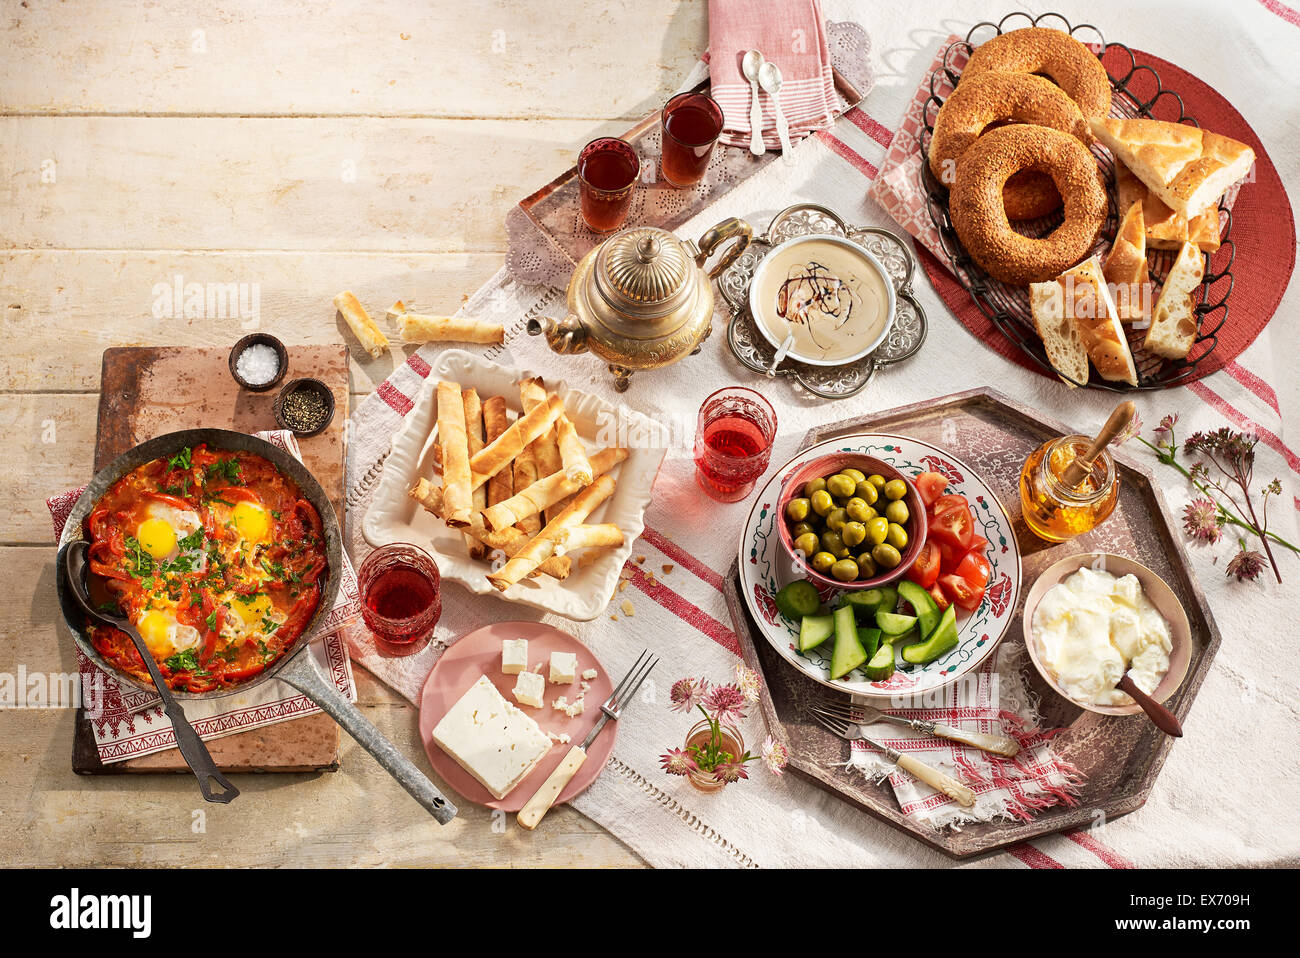 L'originale colazione moderna turca: un incontro di sapori